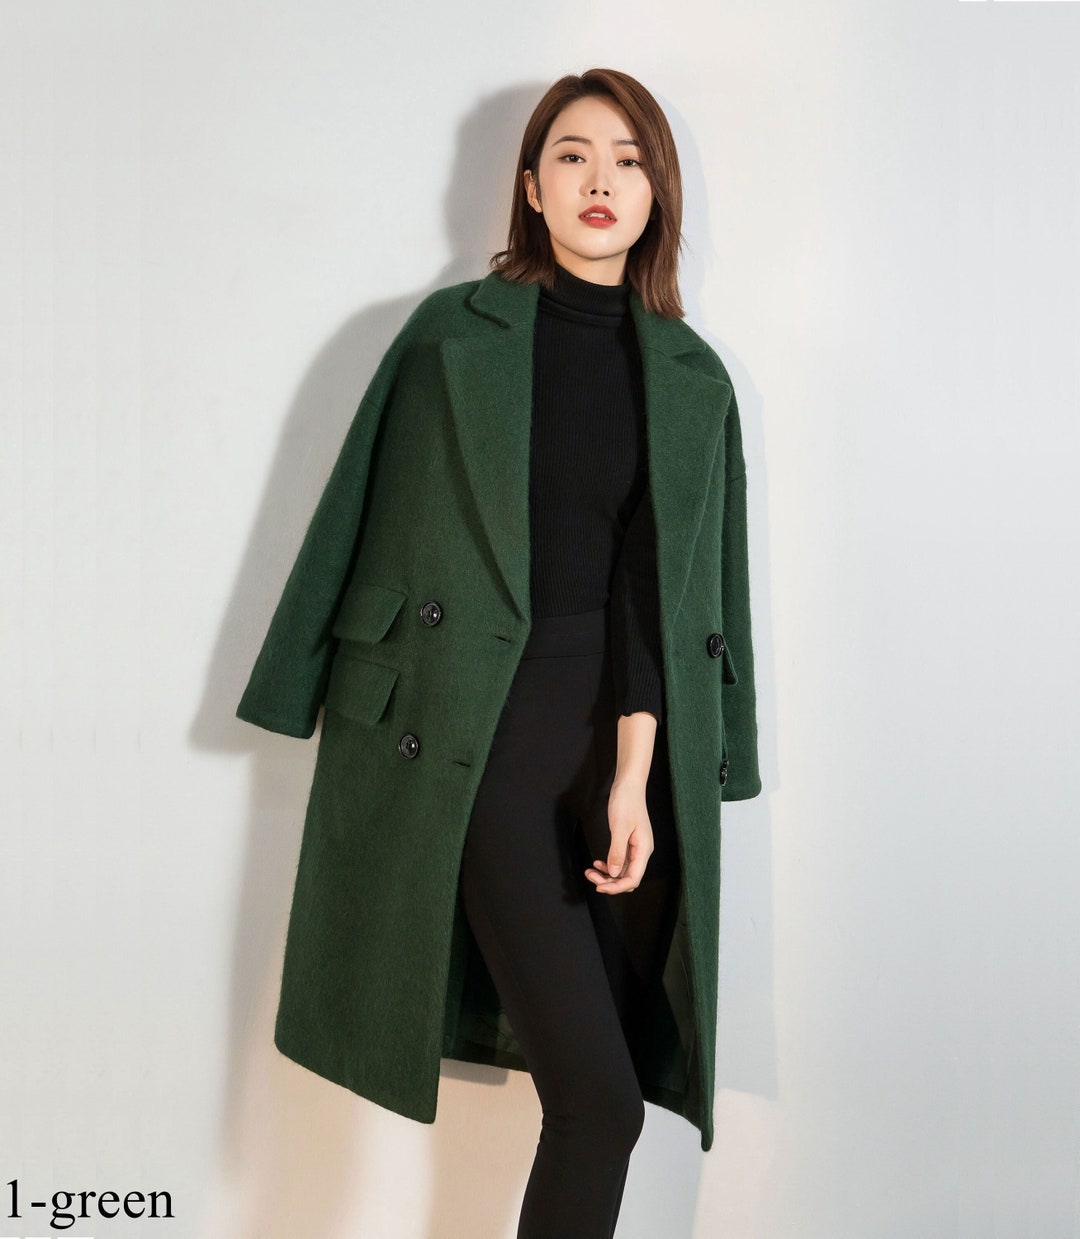 Wool Coat, Green Long Wool Coat, Warm Winter Coat Women, Relaxed Fit ...